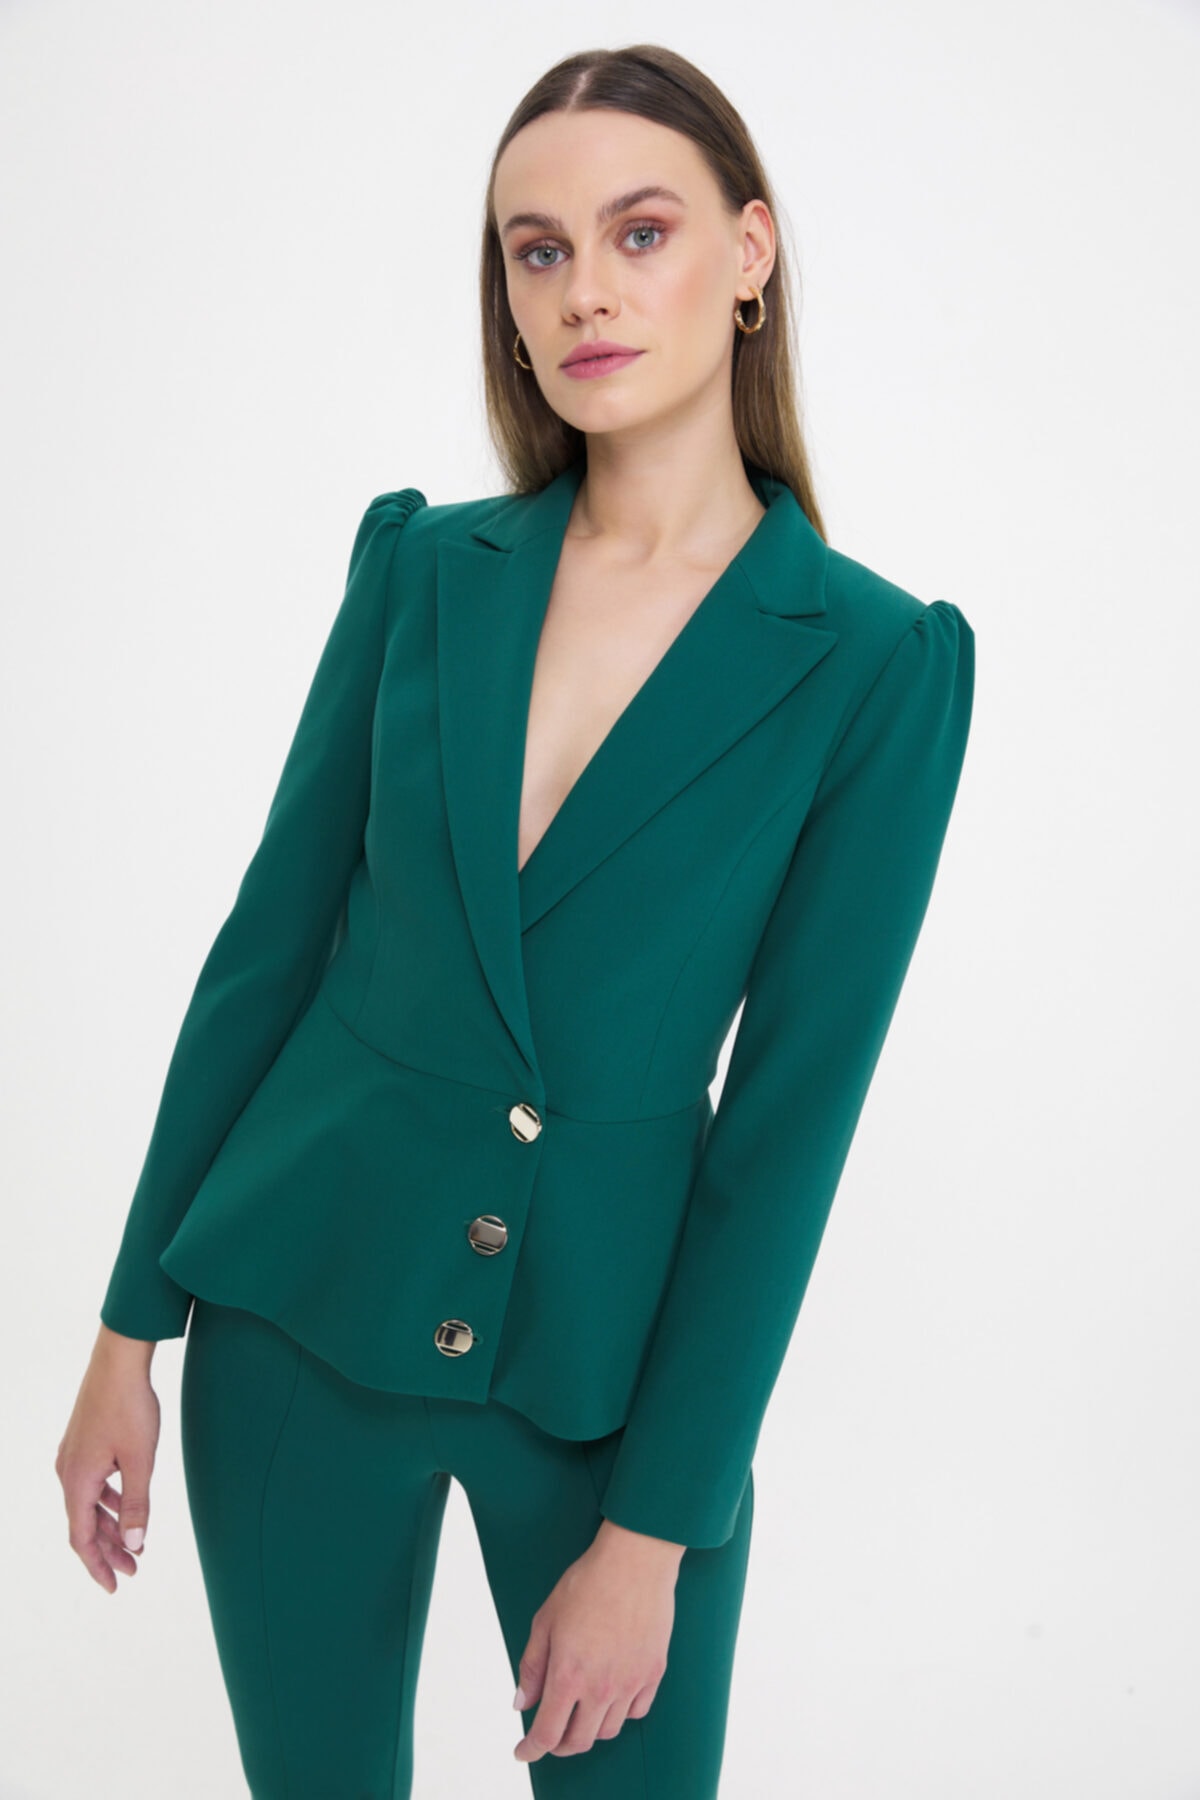 کت زنانه رسمی شیک سبز مدل خاص برند آدله ای دی ال Adl